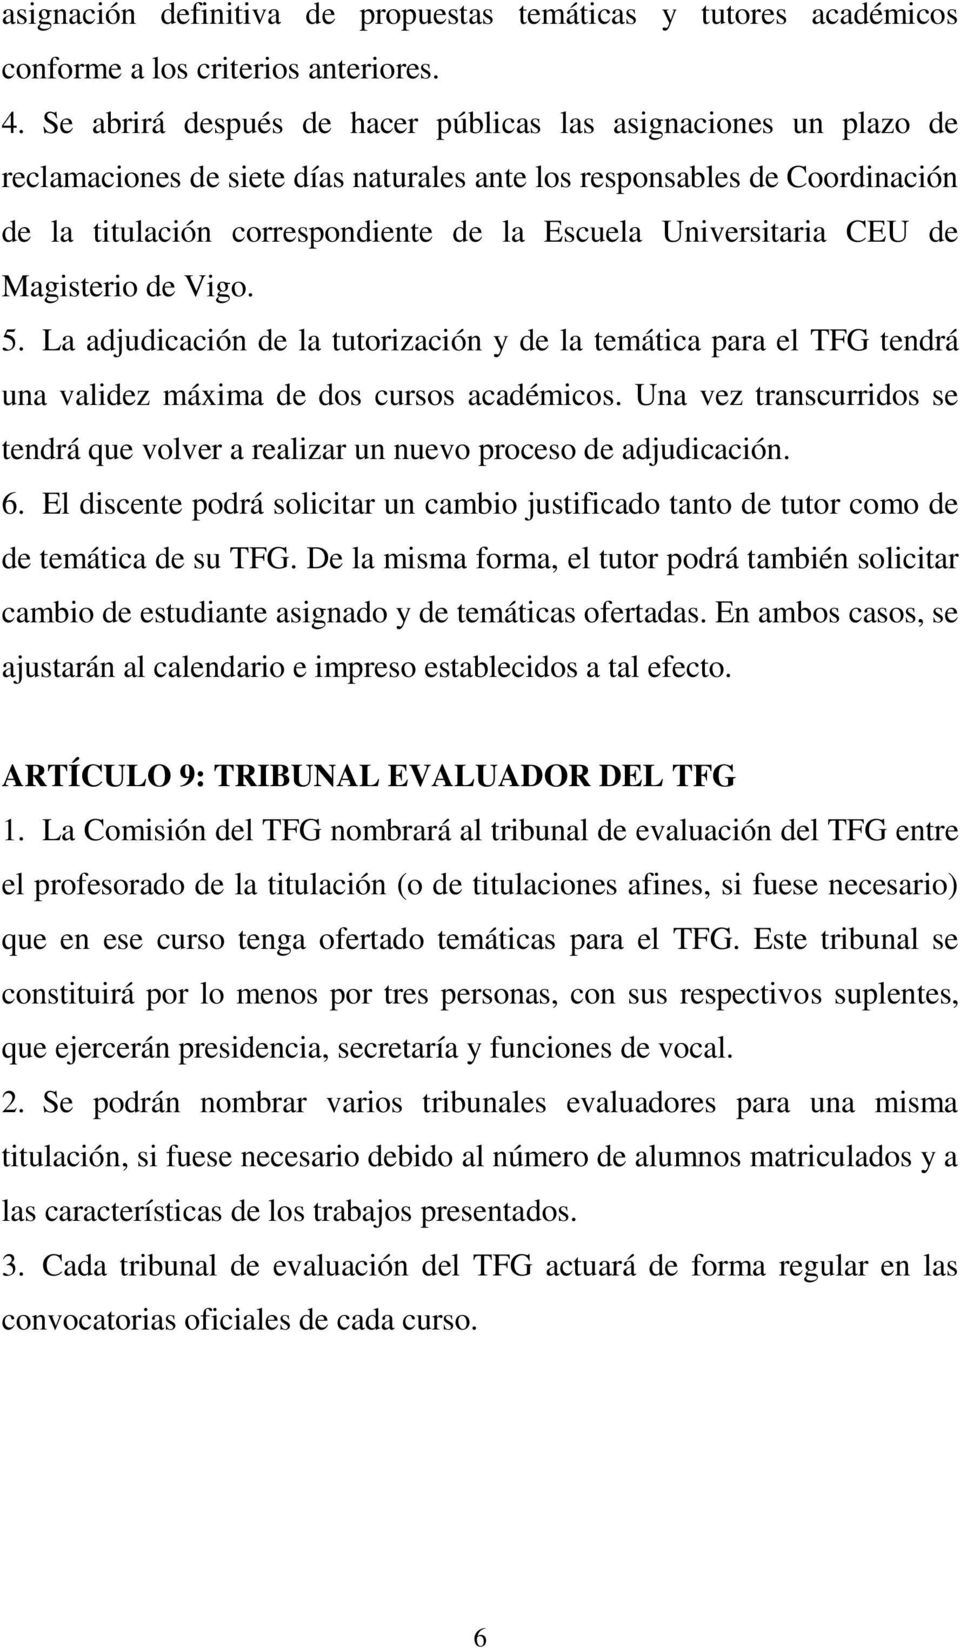 Universitaria CEU de Magisterio de Vigo. 5. La adjudicación de la tutorización y de la temática para el TFG tendrá una validez máxima de dos cursos académicos.